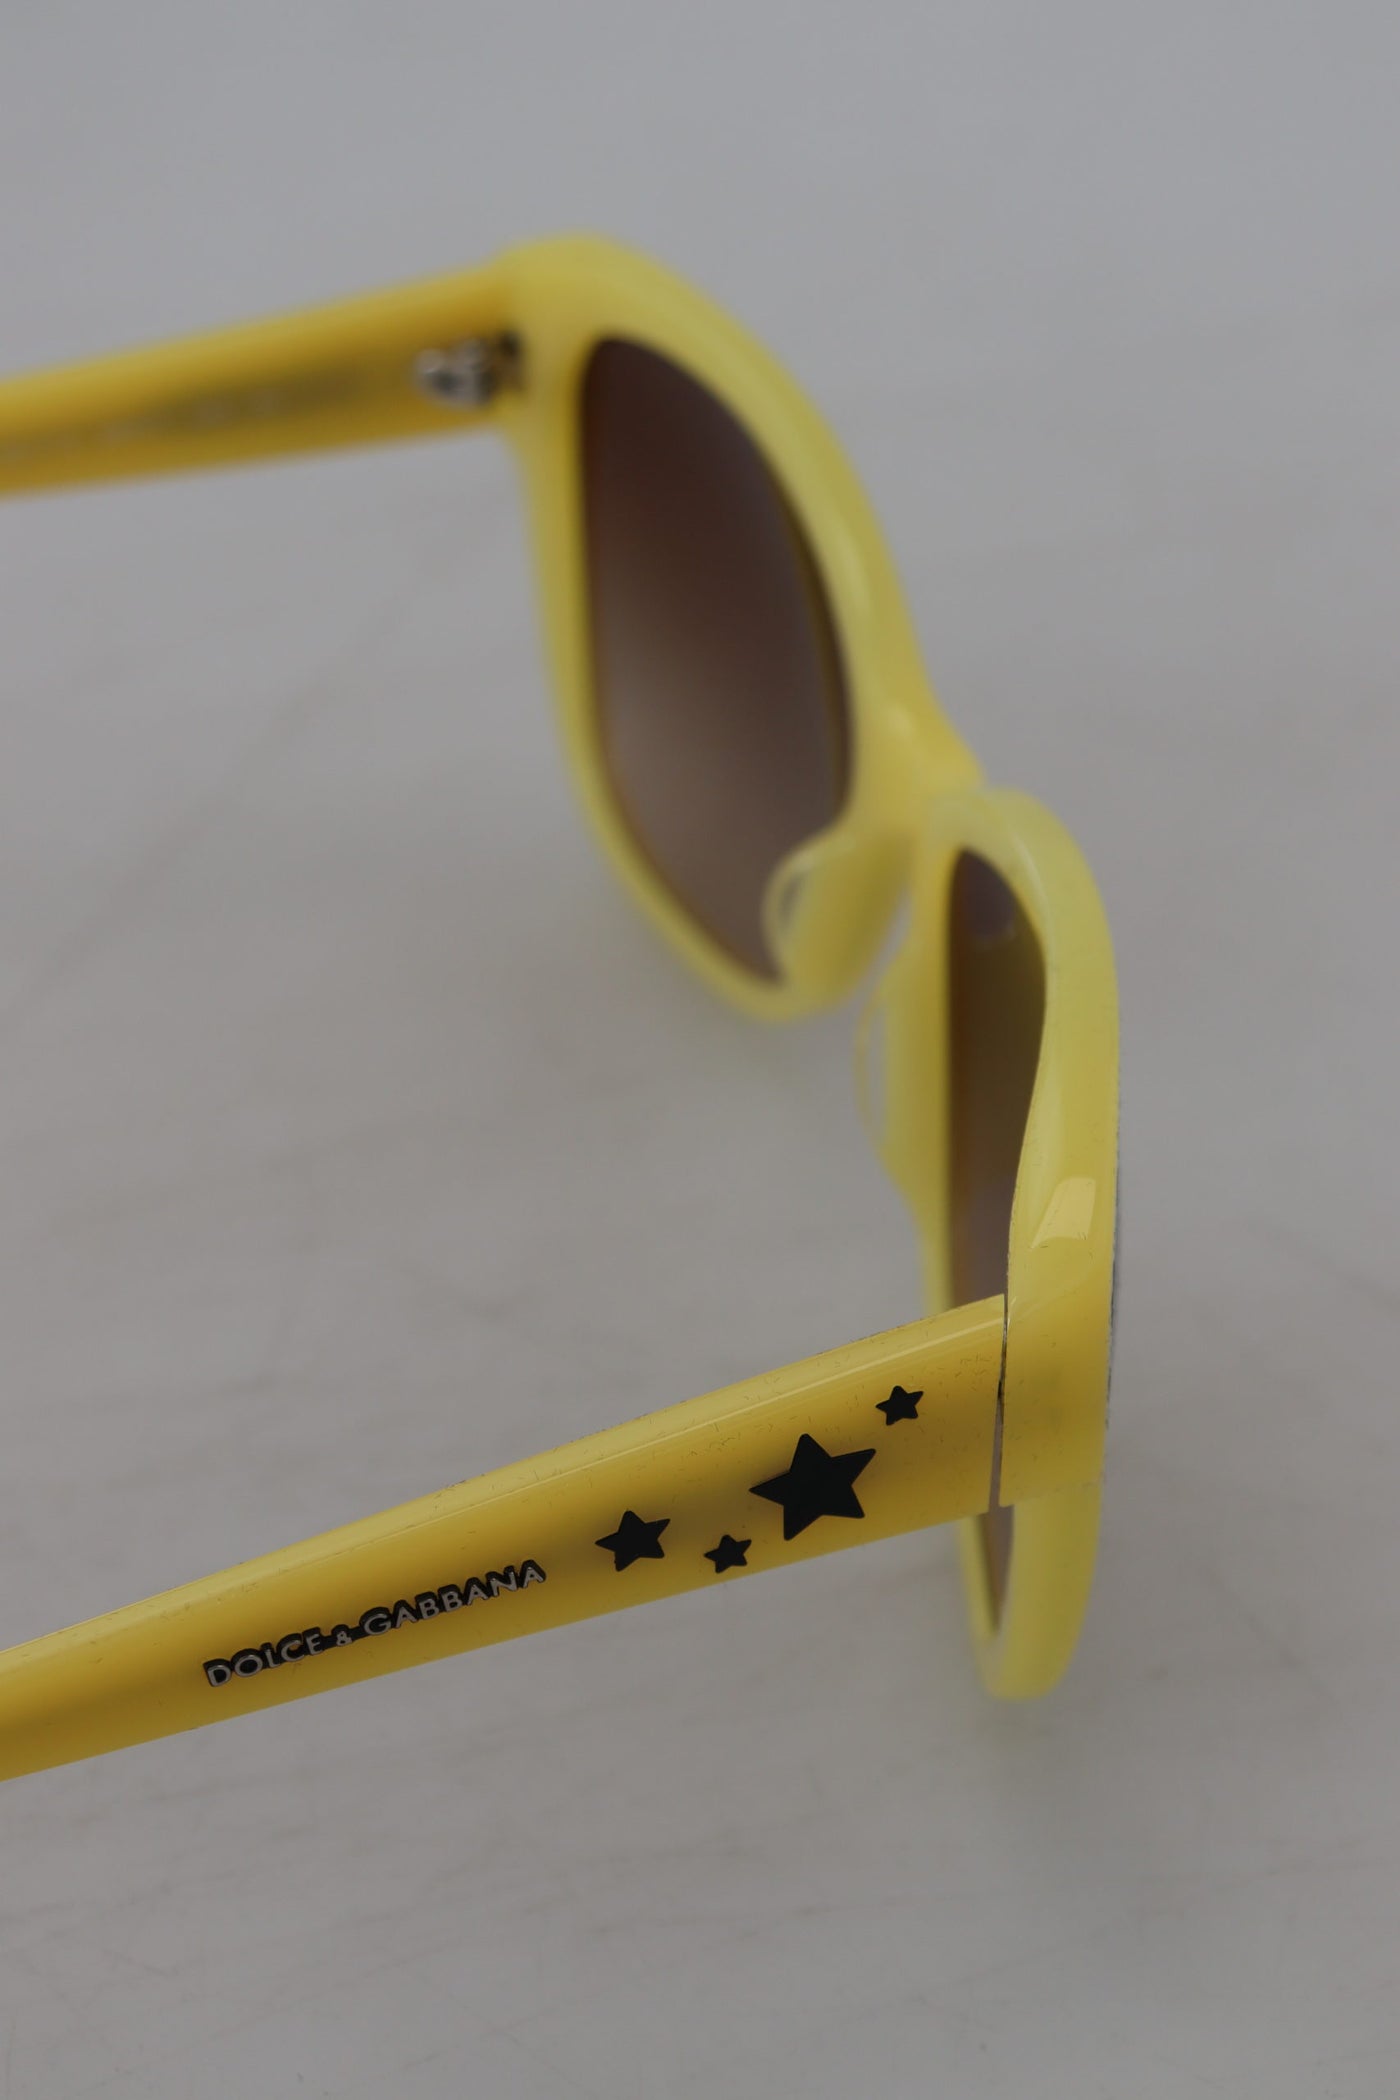 Dolce & Gabbana Yellow Acetate Frame Stars Embellisht DG4124 Sunglasses